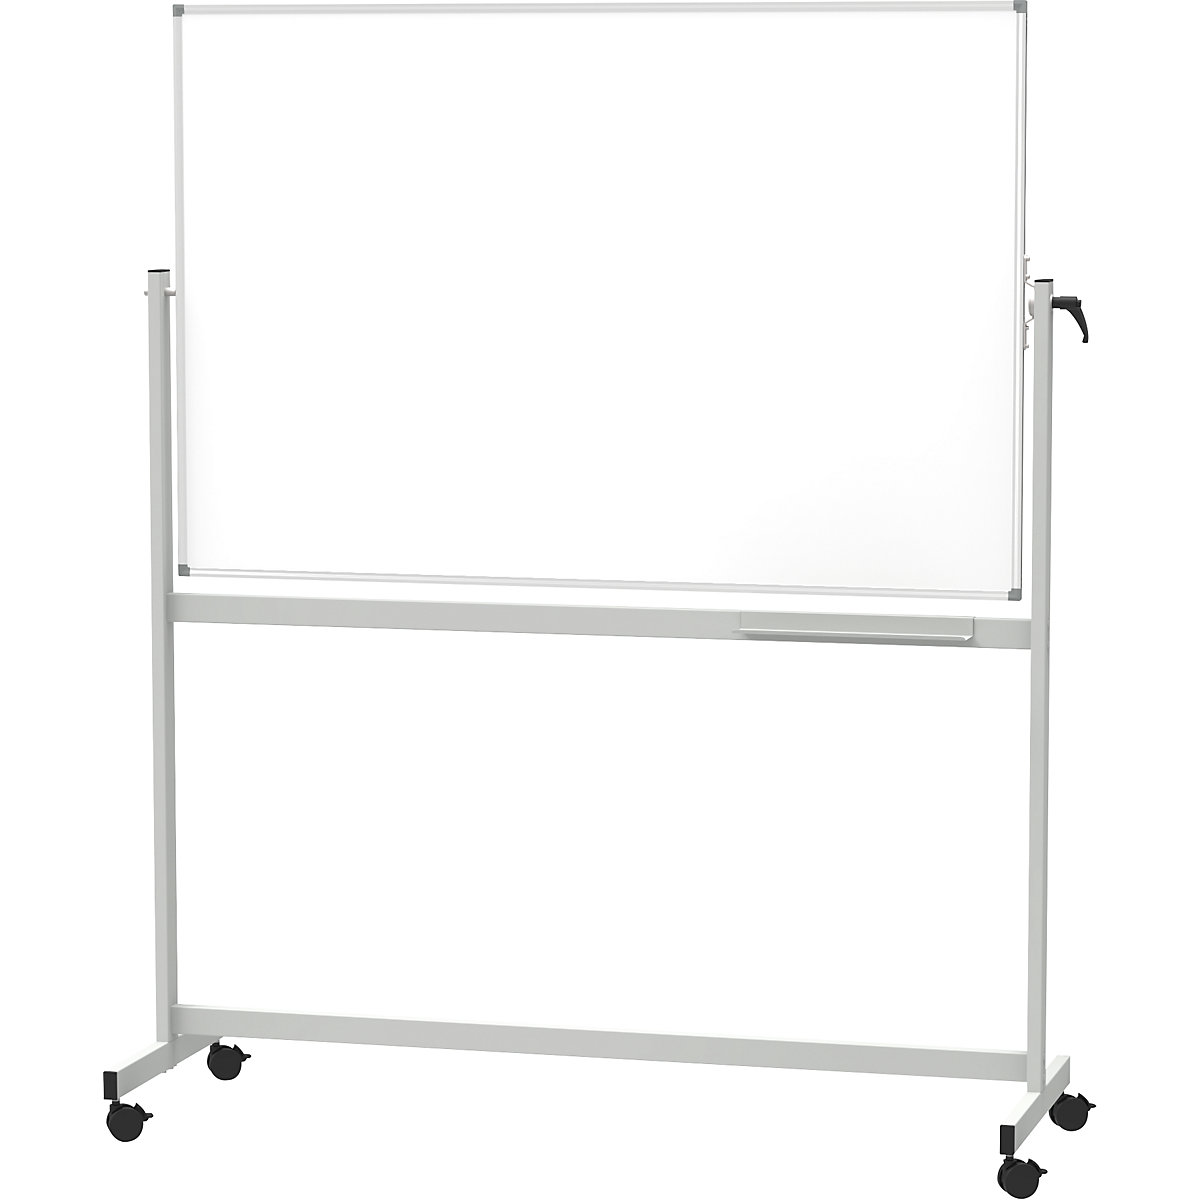 Mobile whiteboard - MAUL